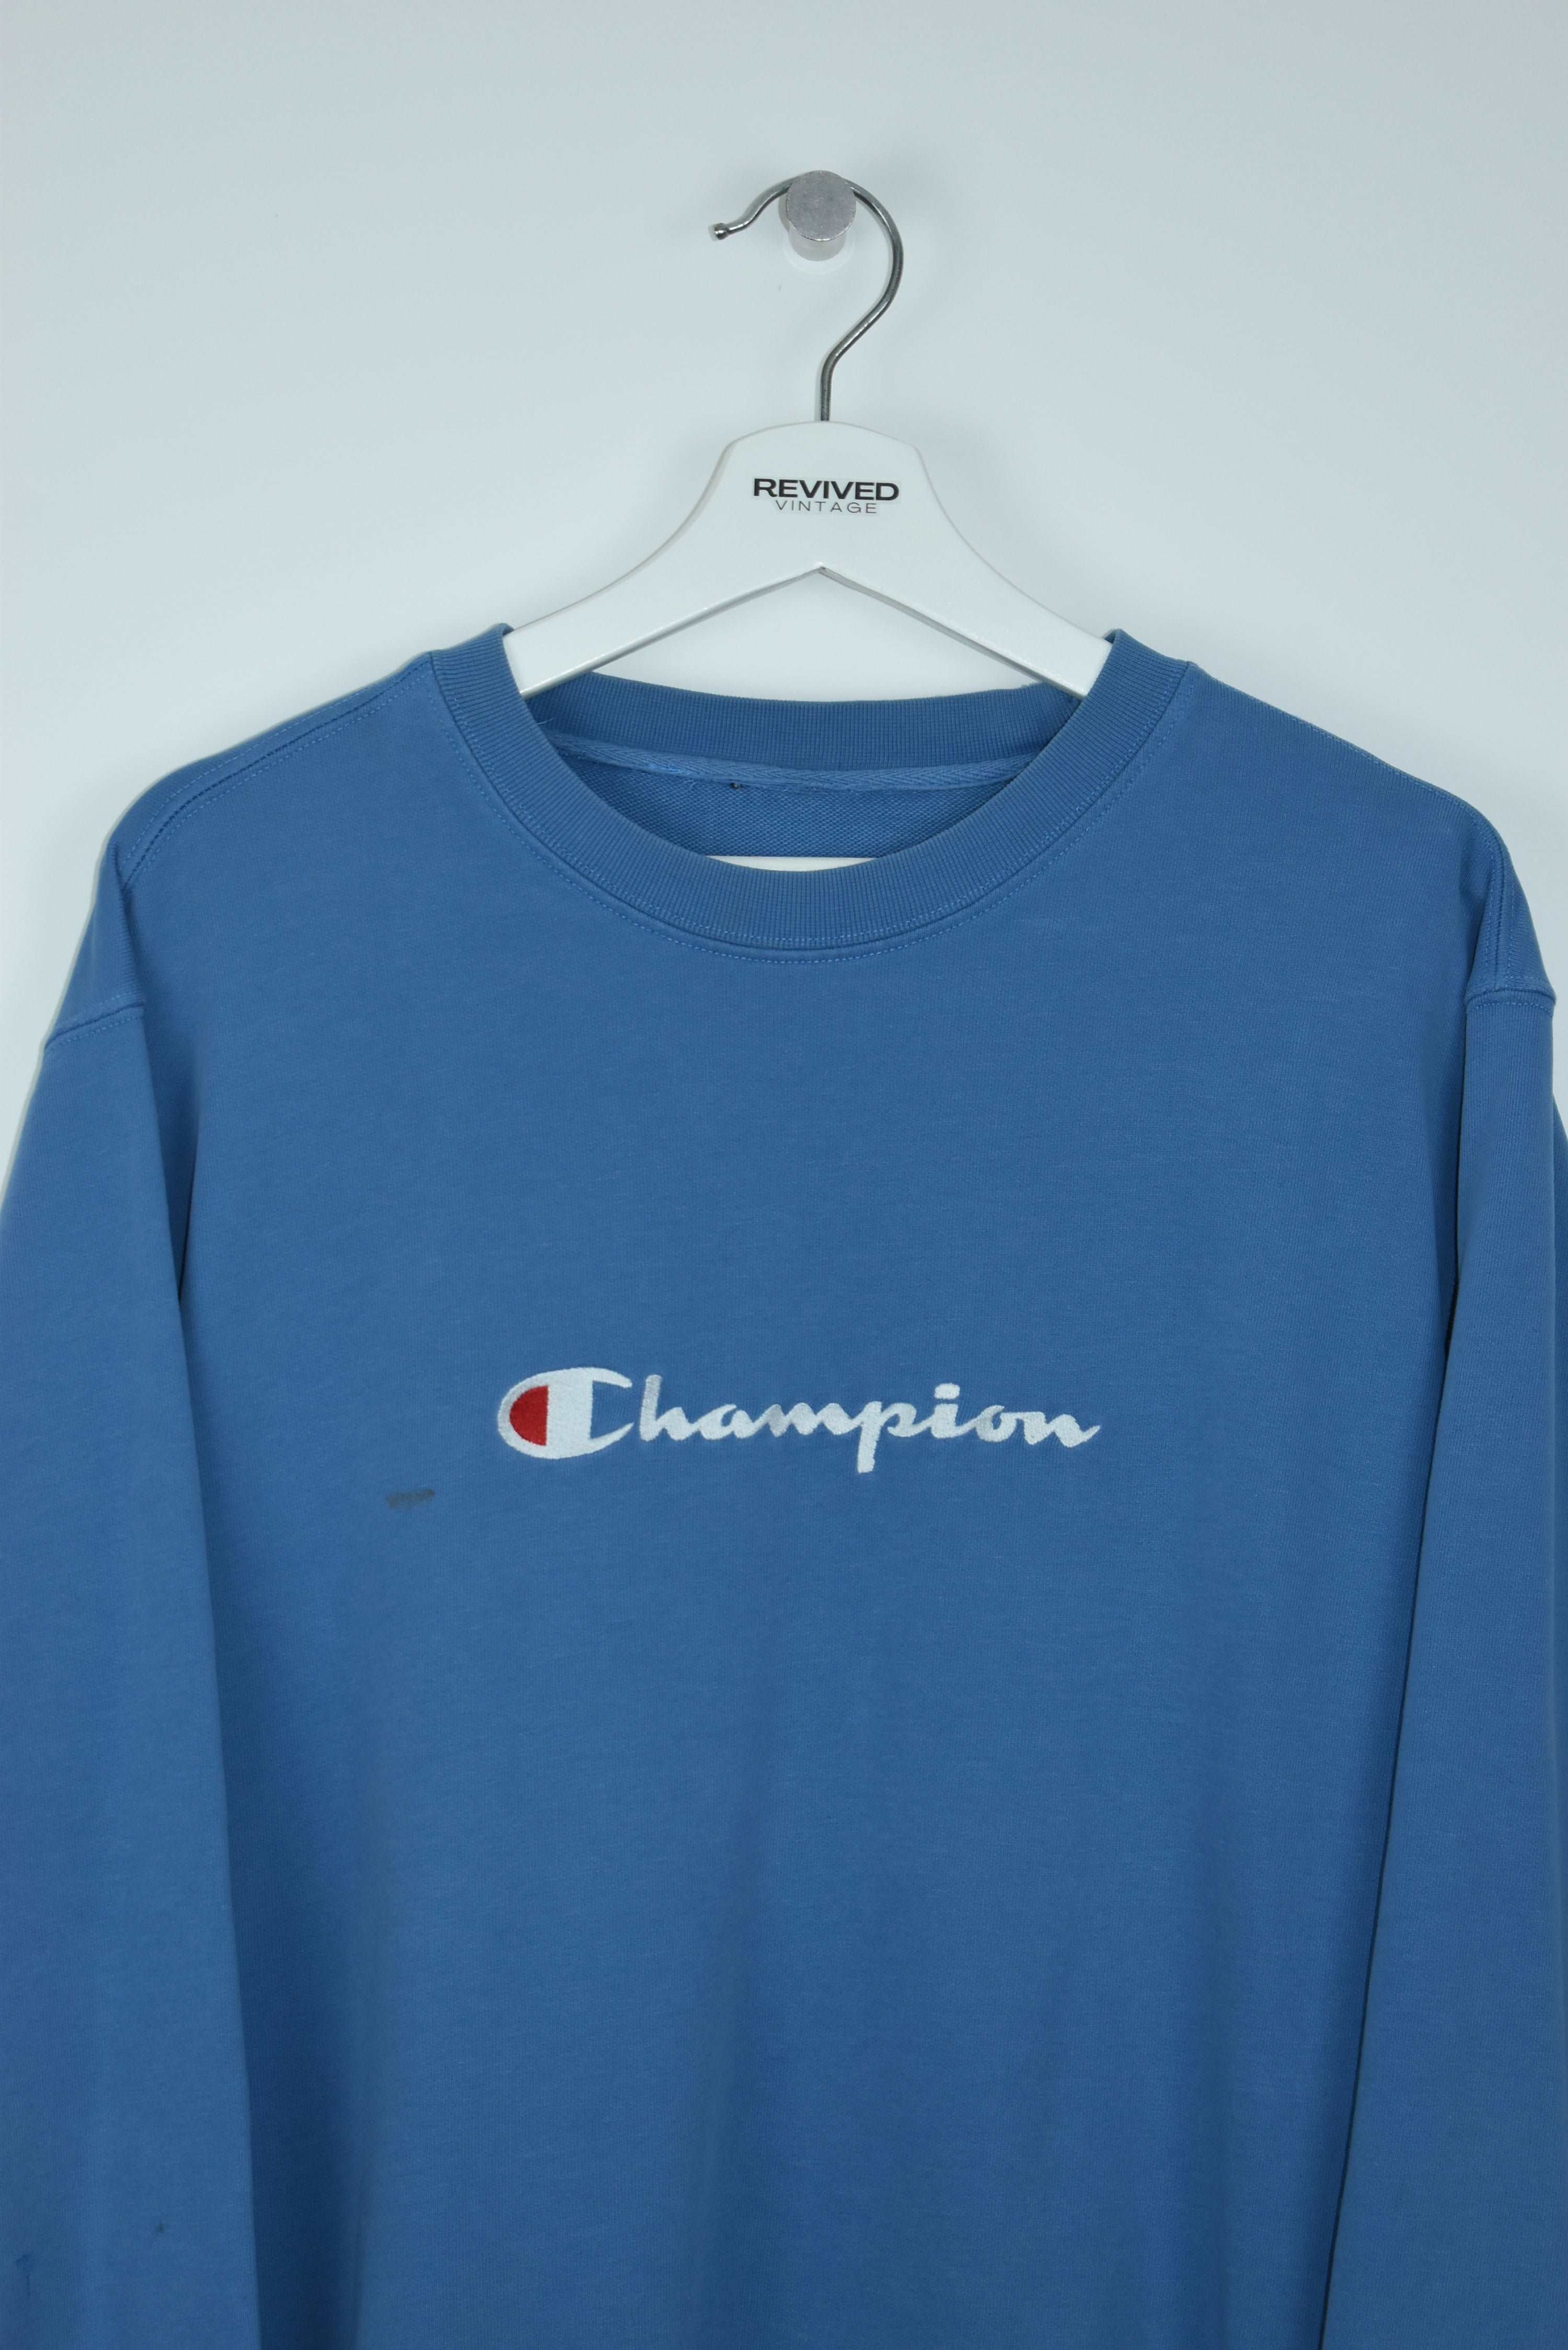 Vintage Champion Embroidered Sweatshirt Large